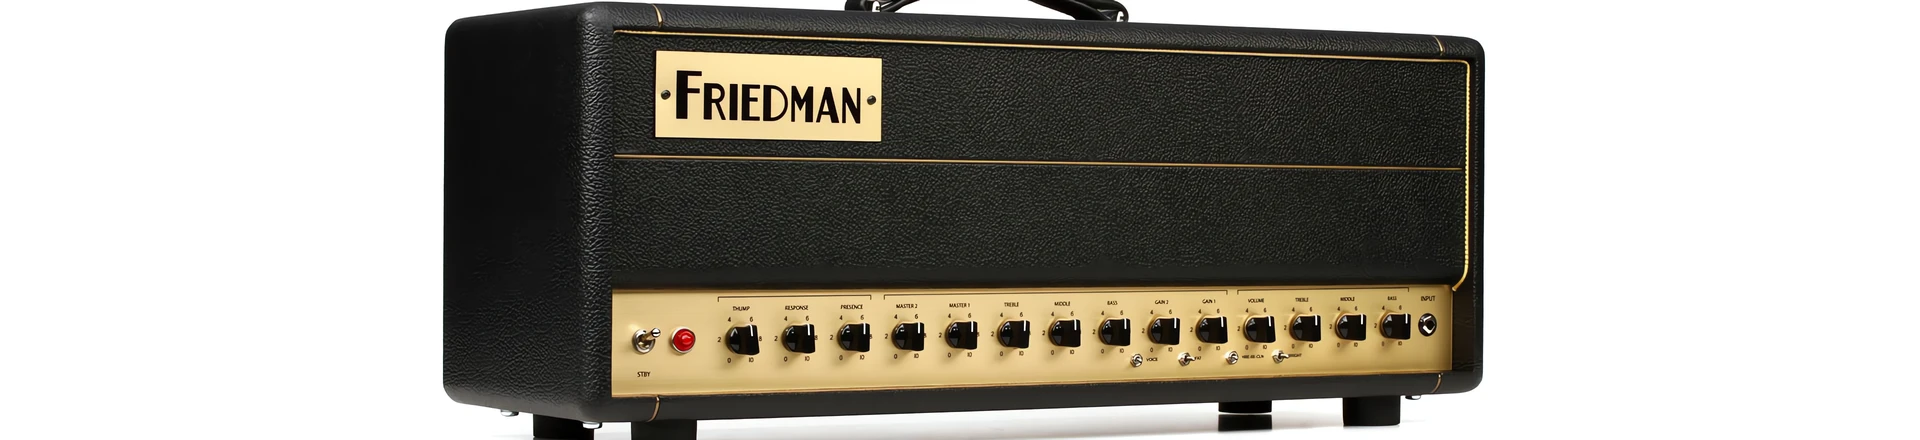 Friedman BE-50 Deluxe - 3 kanały rozkoszy 